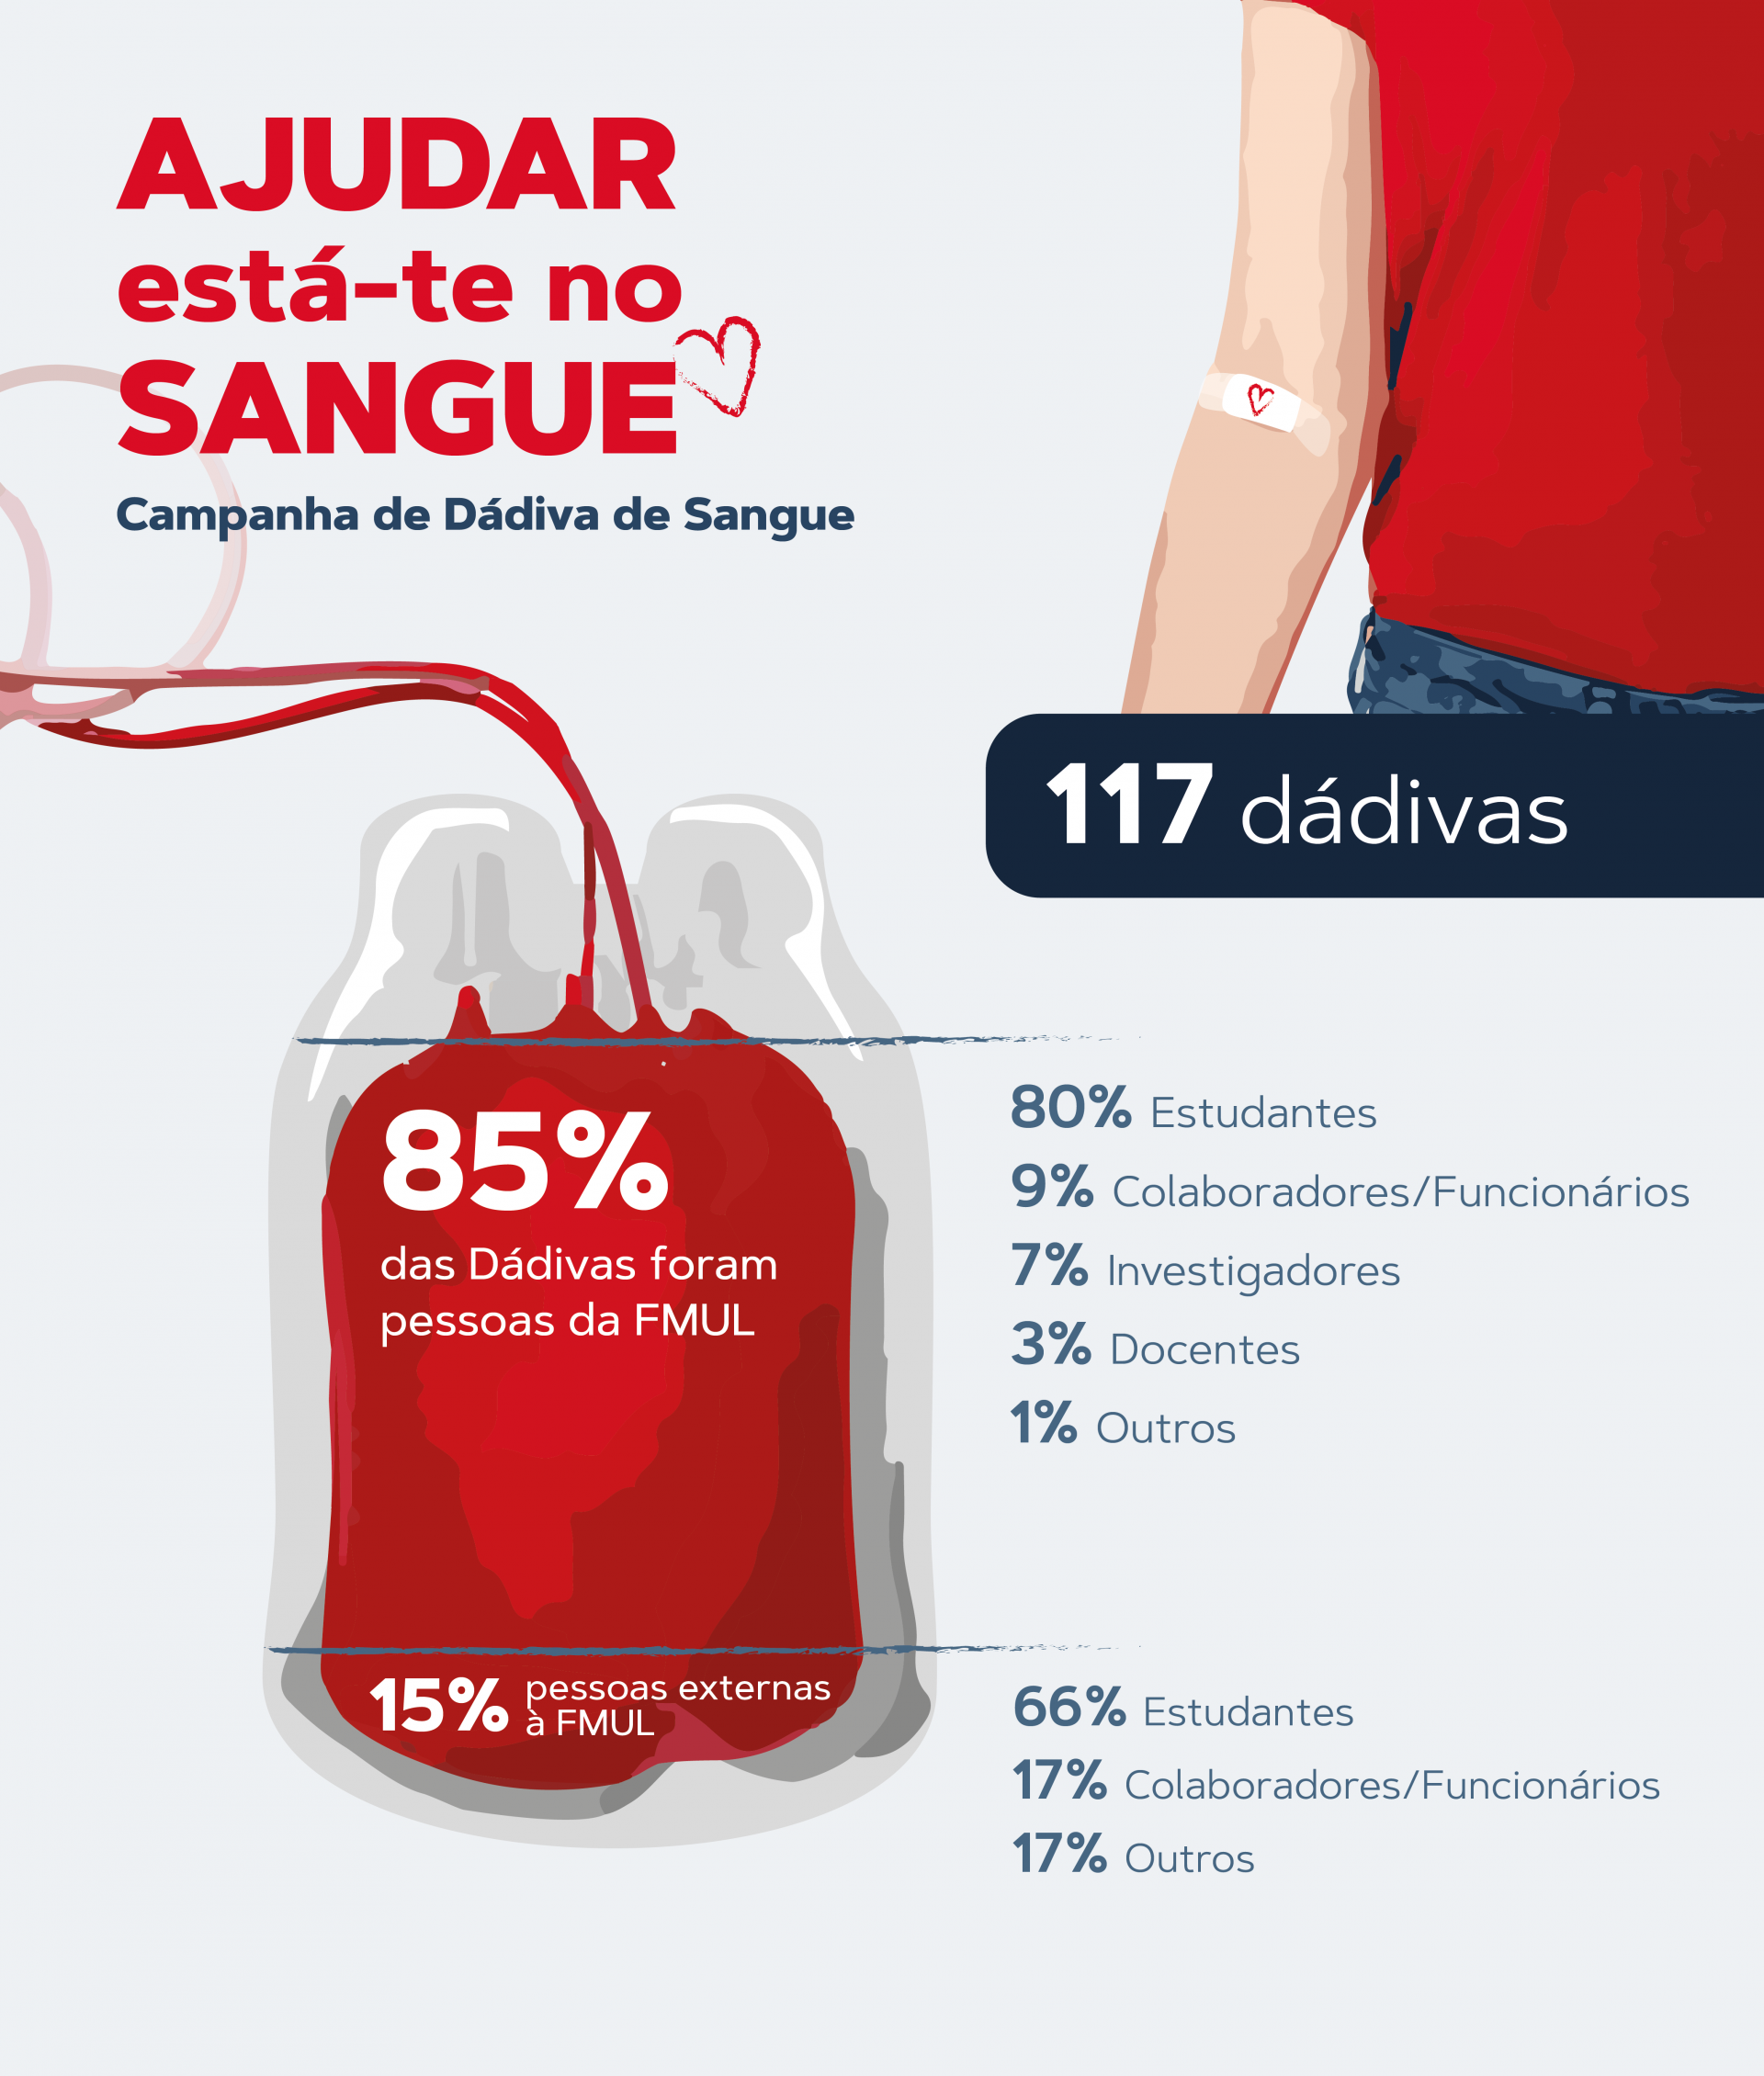 Cartaz com infografia dos dados da campanha de dádiva de sangue